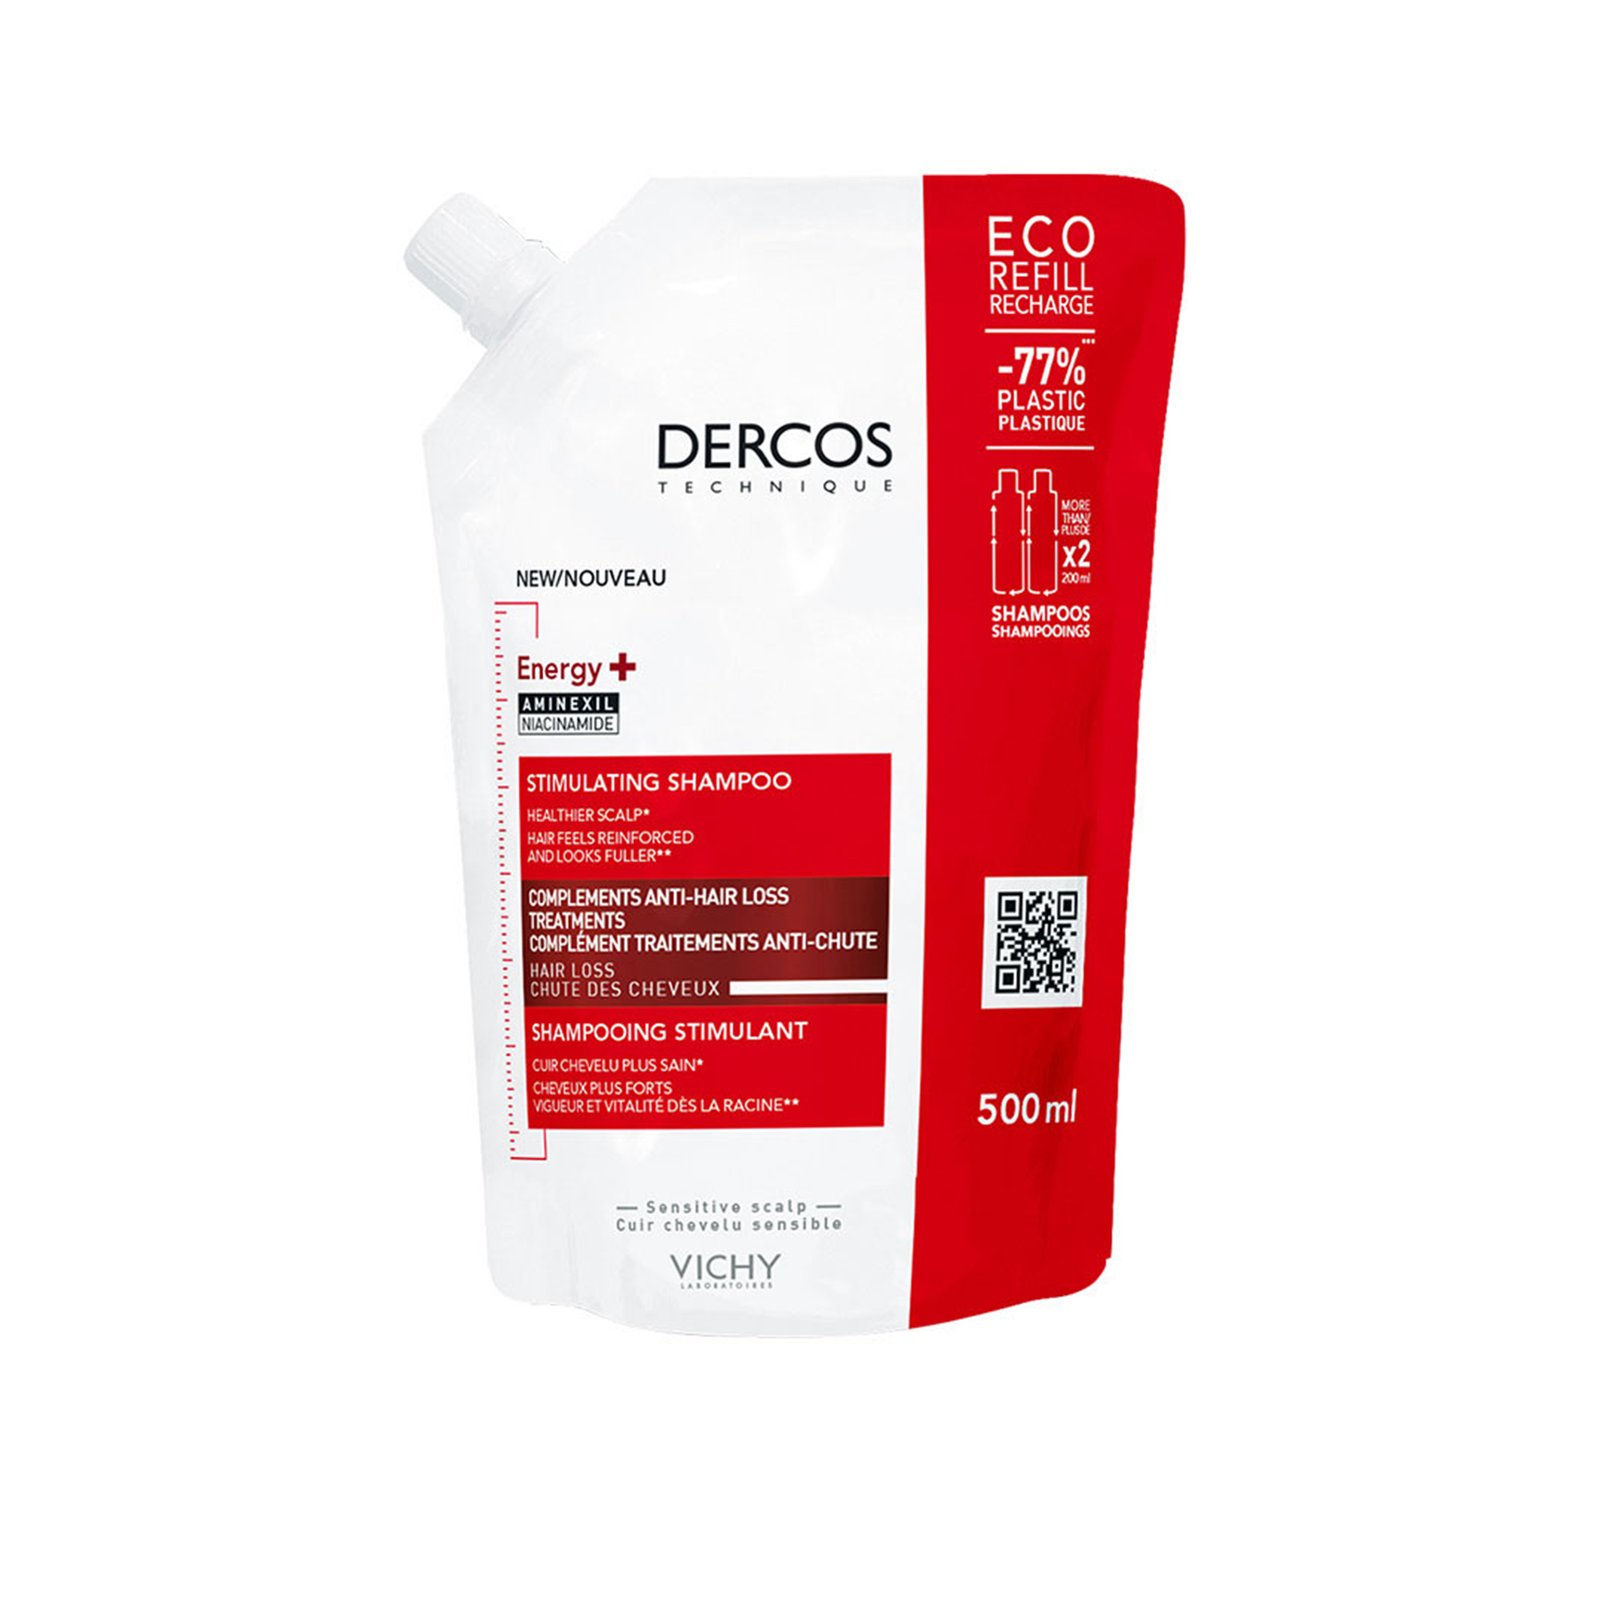 Vichy Dercos Energising Stimulating Shampoo Refill 500ml (16.9 fl oz)